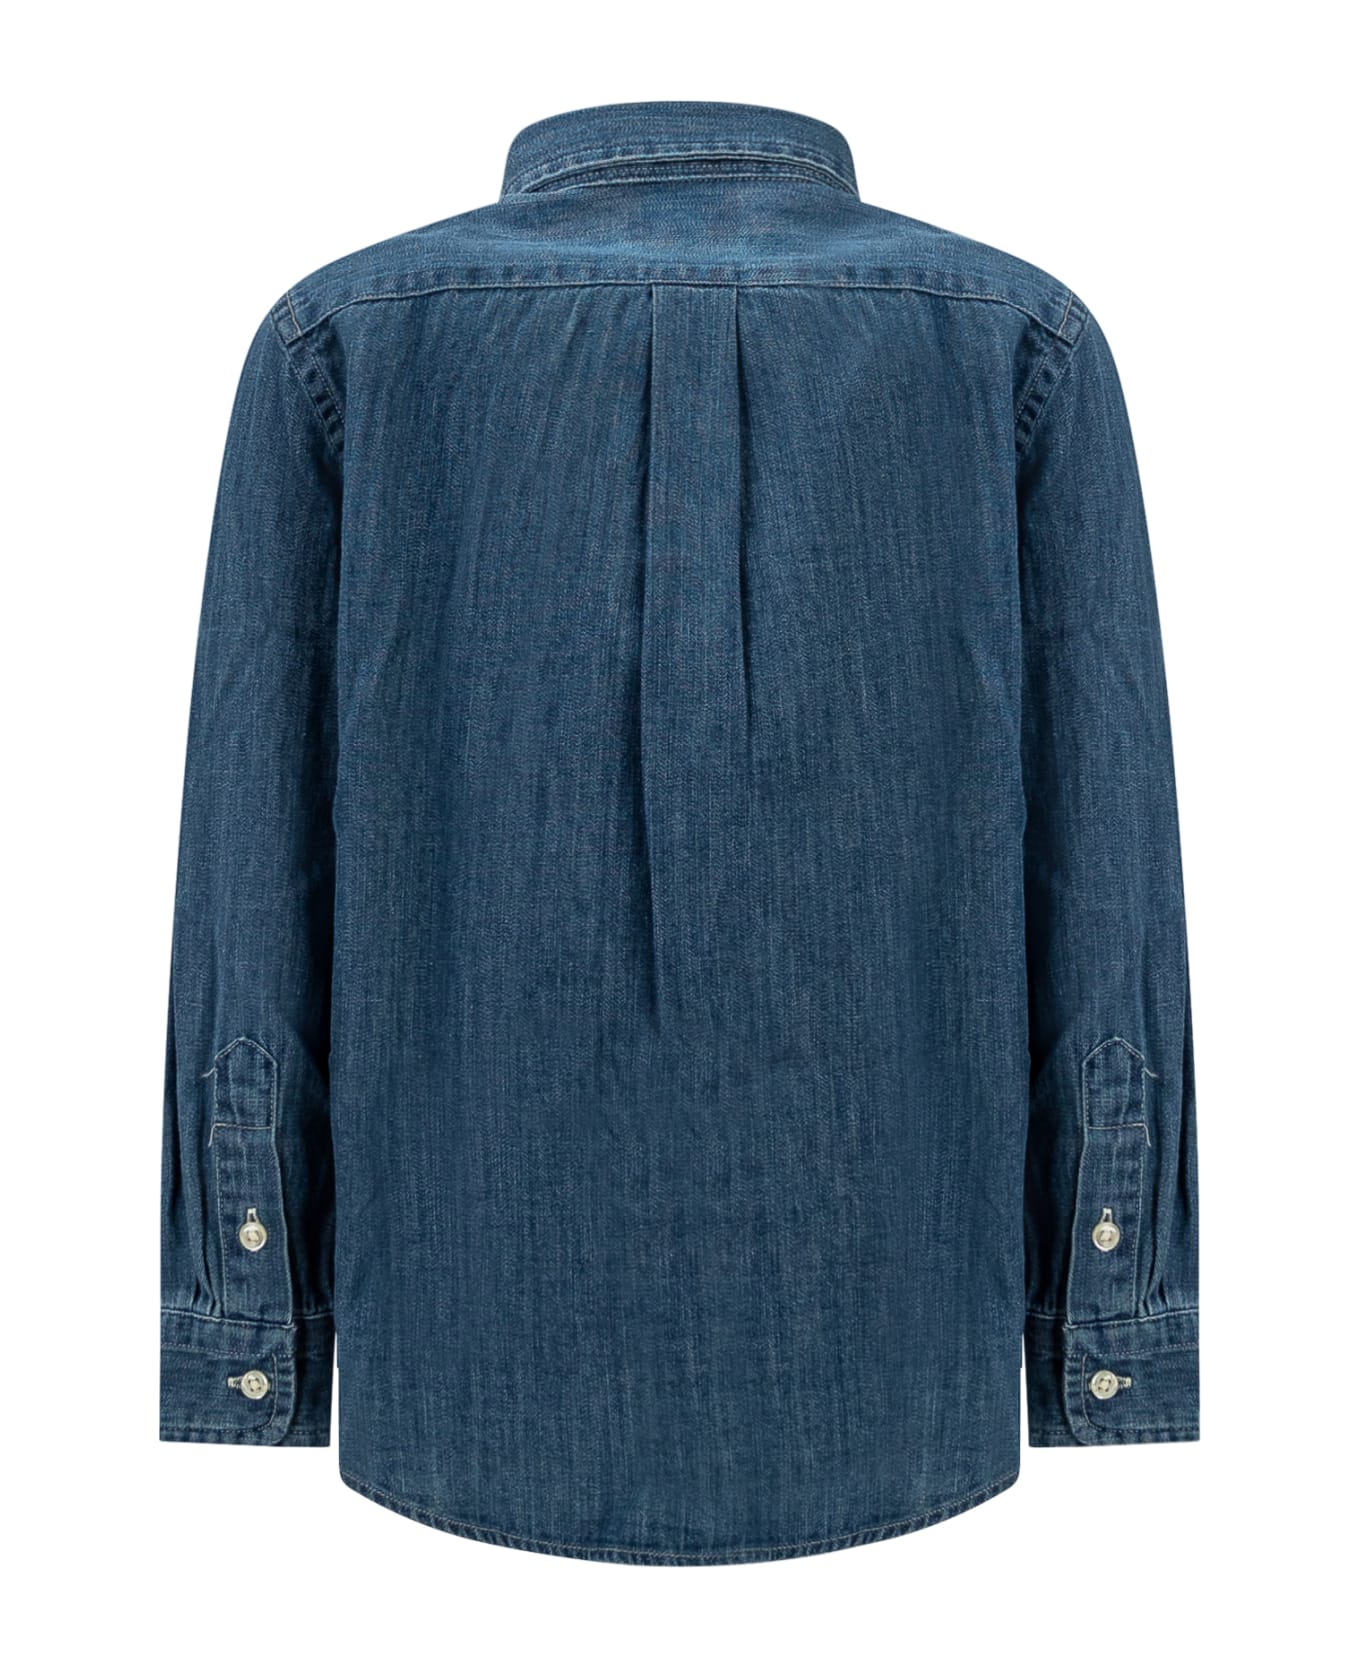 Polo Ralph Lauren Denim Shirt - DK BLUE シャツ